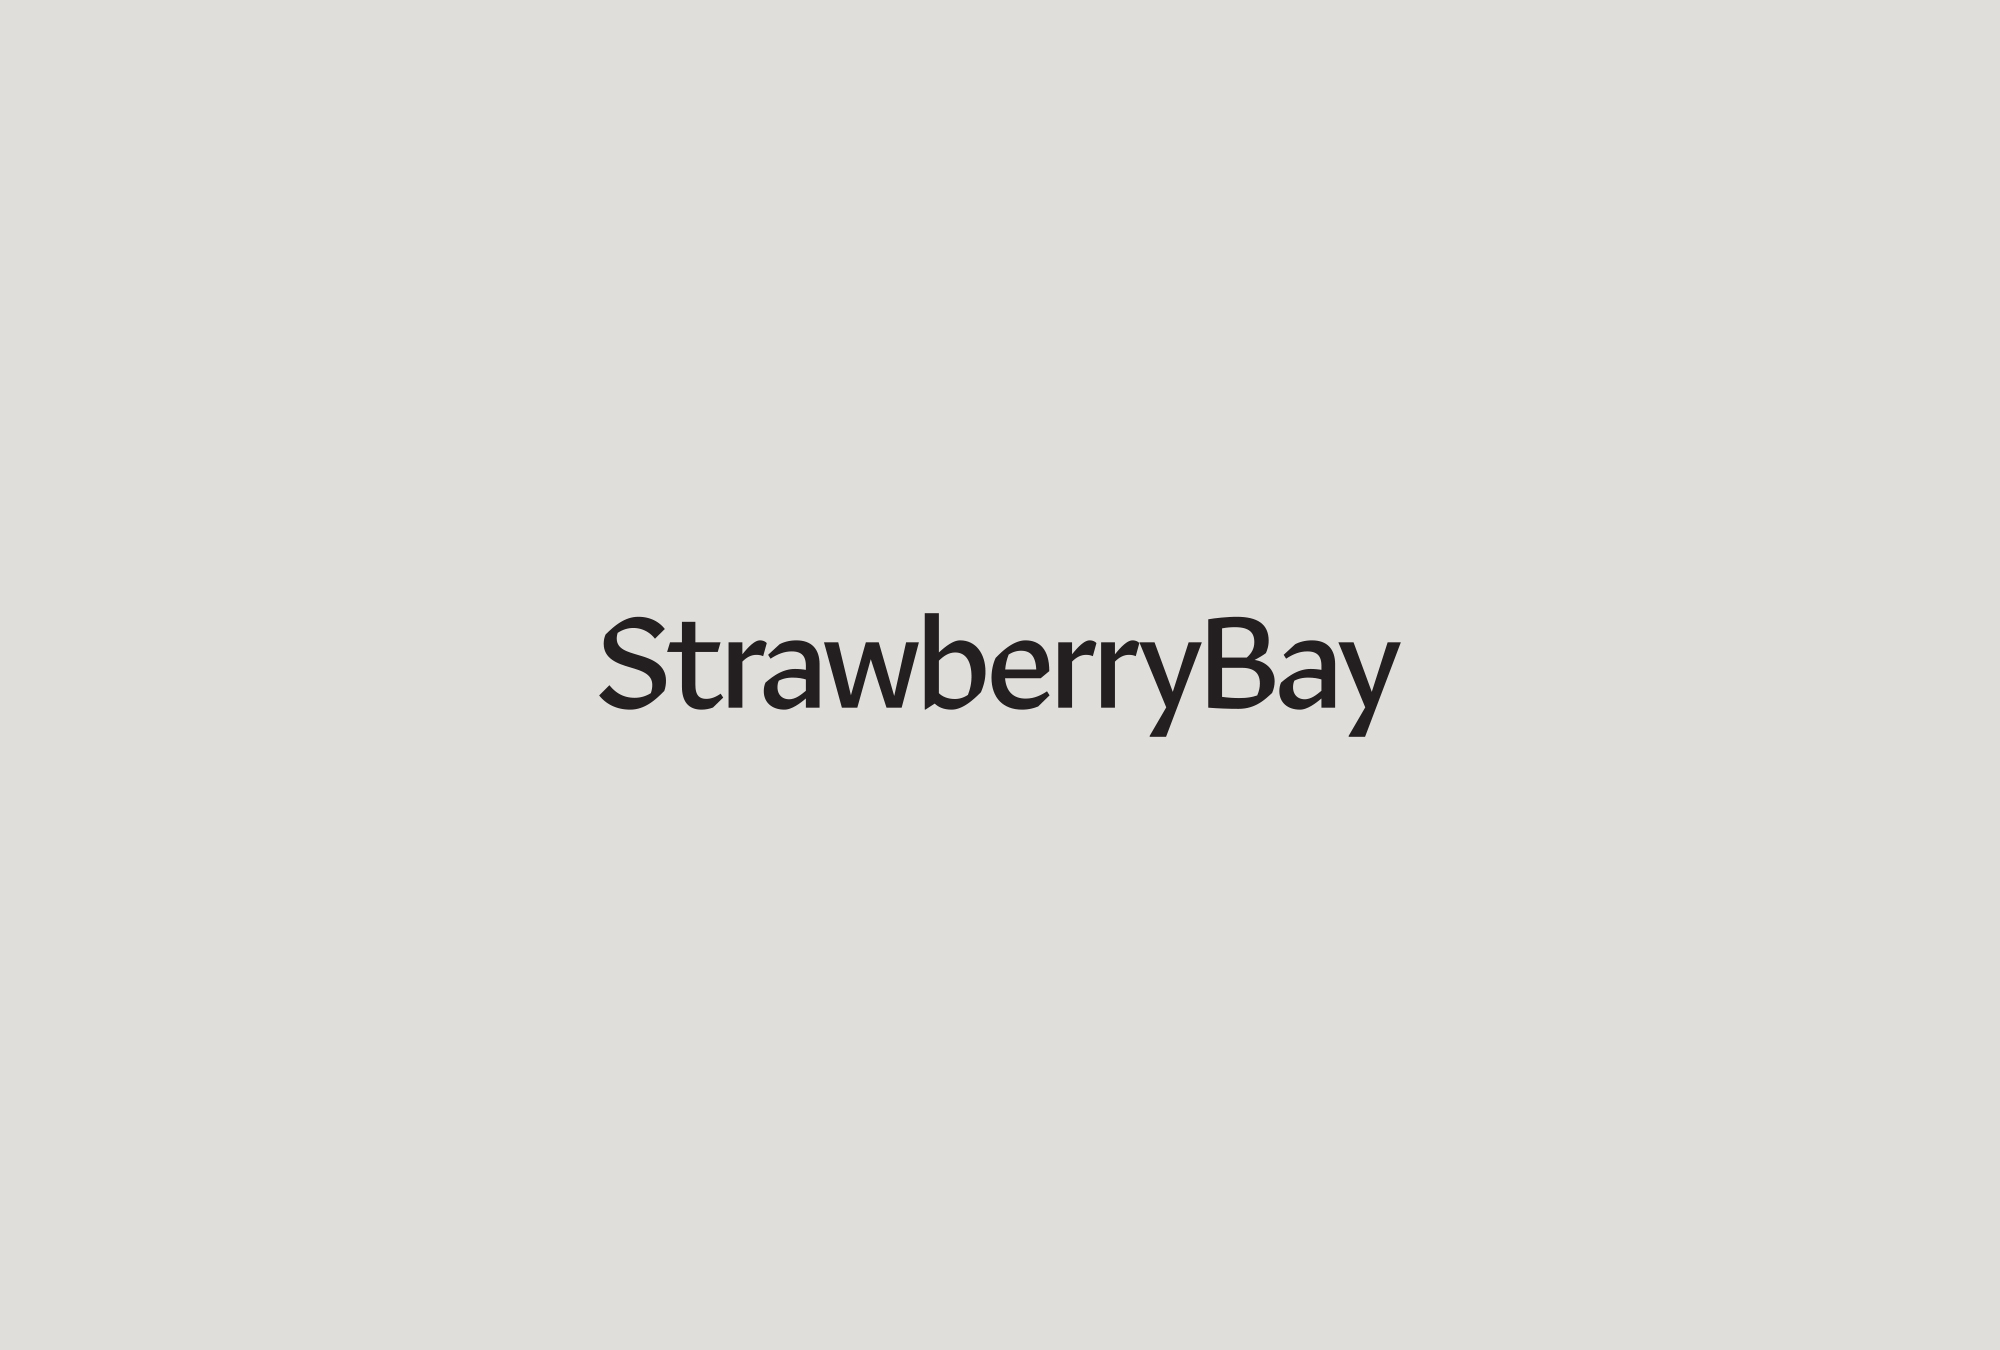 strawberrybay_logo